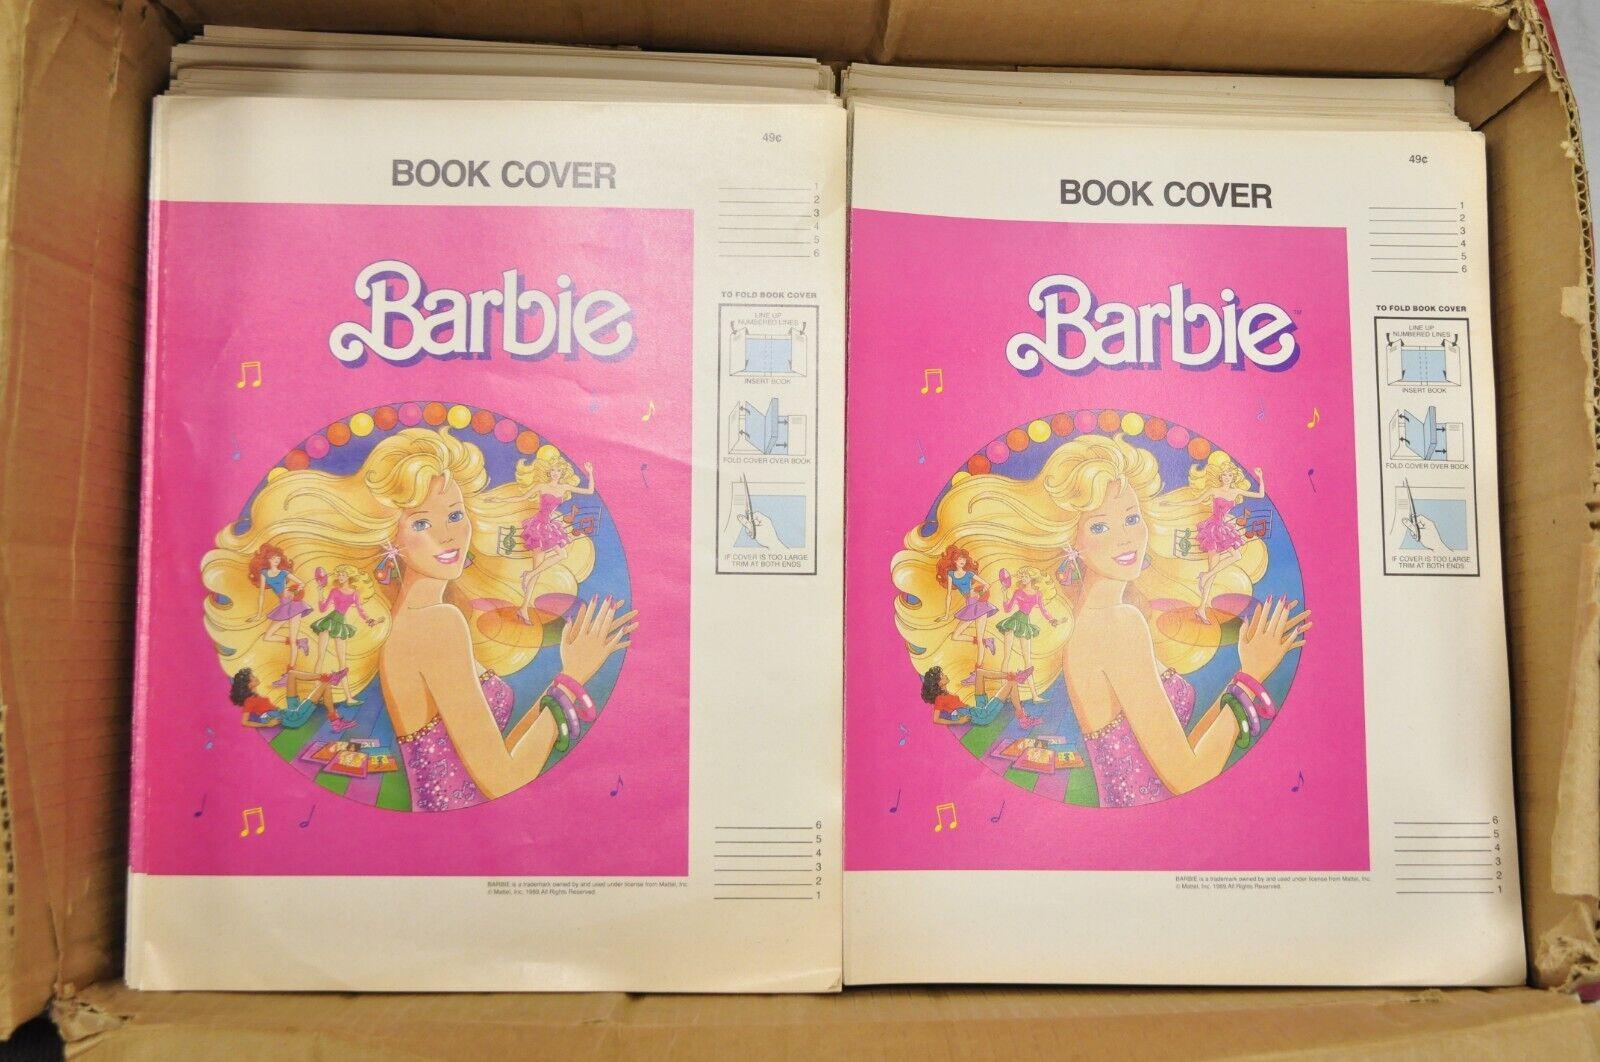 Vintage 1989 Barbie Mattel Original Pink Paper Book Covers NOS - Viele verfügbar. Artikel verfügt über neue alte Lager Vintage-Sammlung von Mattel Barbie Buchdeckel. Ca. 1989. Abmessungen: 14,25